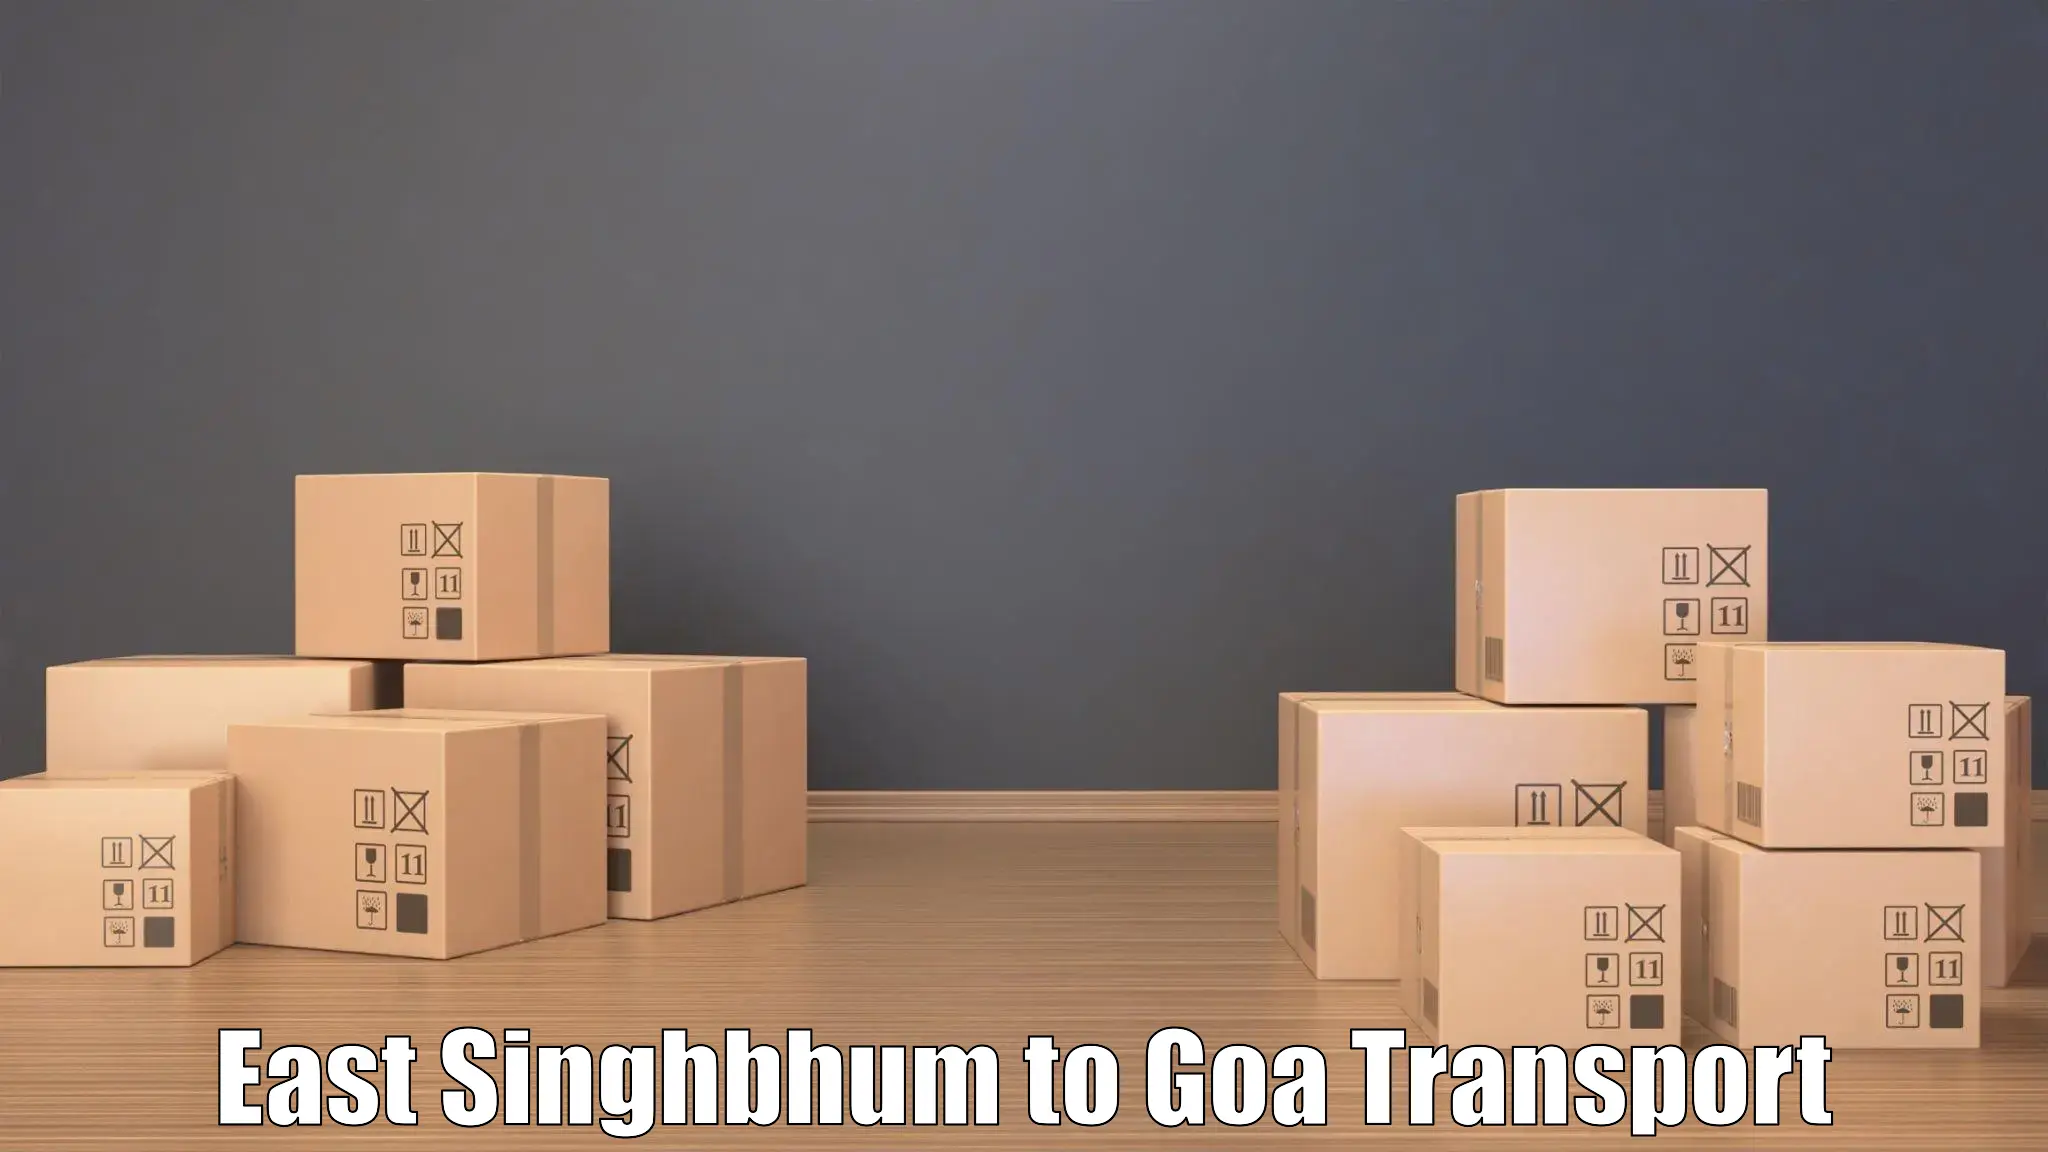 Door to door transport services East Singhbhum to Goa University